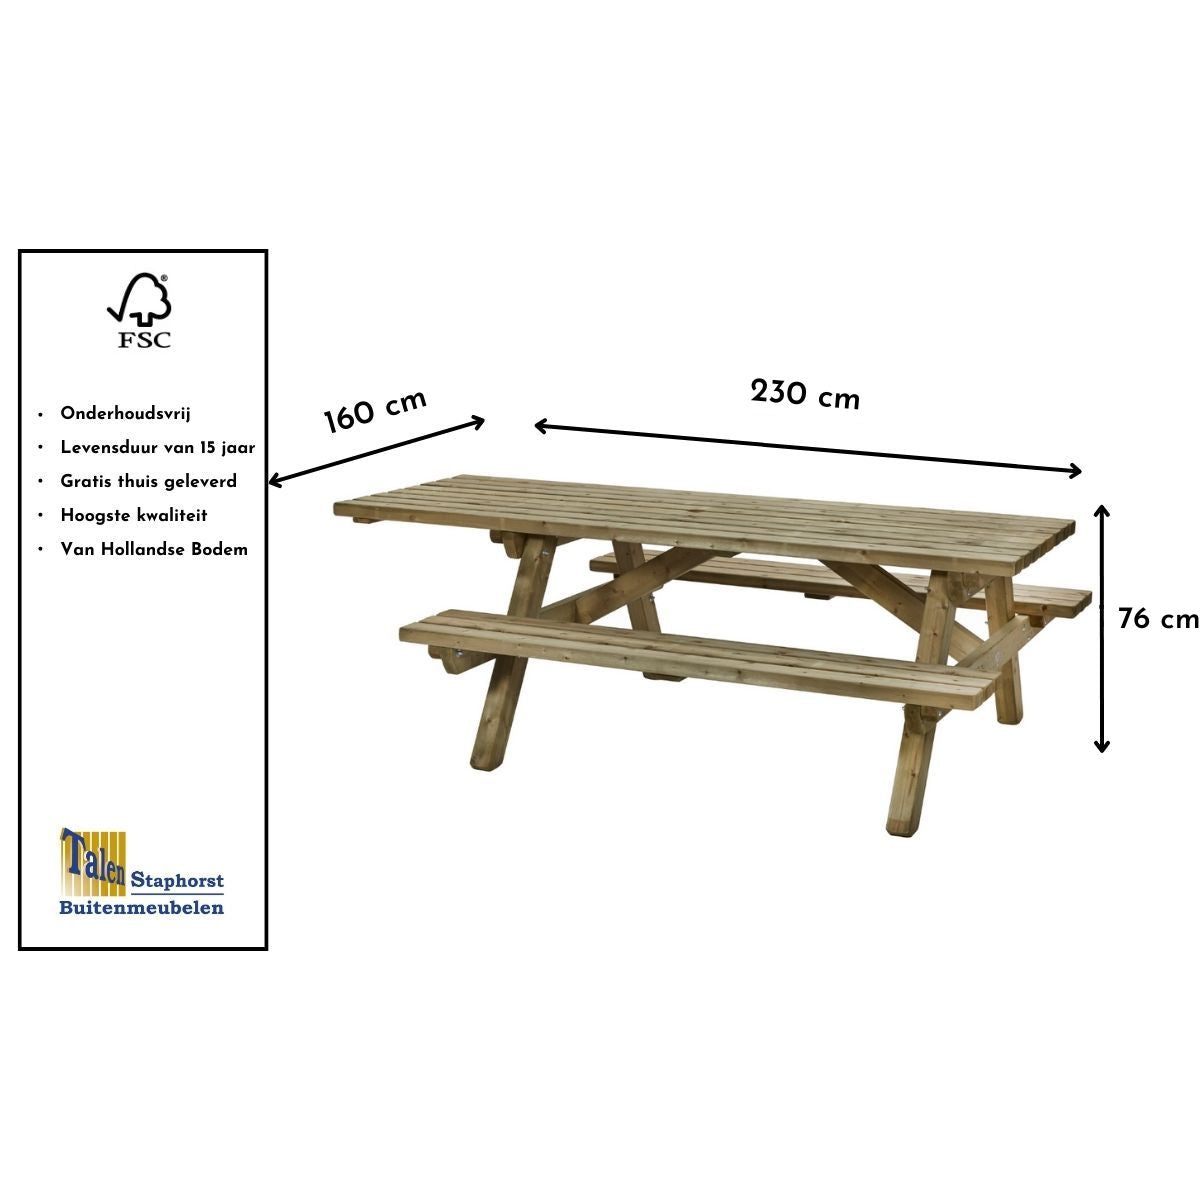 rolstoel picknicktafel rolstoelpicknicktafel voor mensen met of zonder met goed kwaliteit hout maten FSC gekeurd gaat lang mee